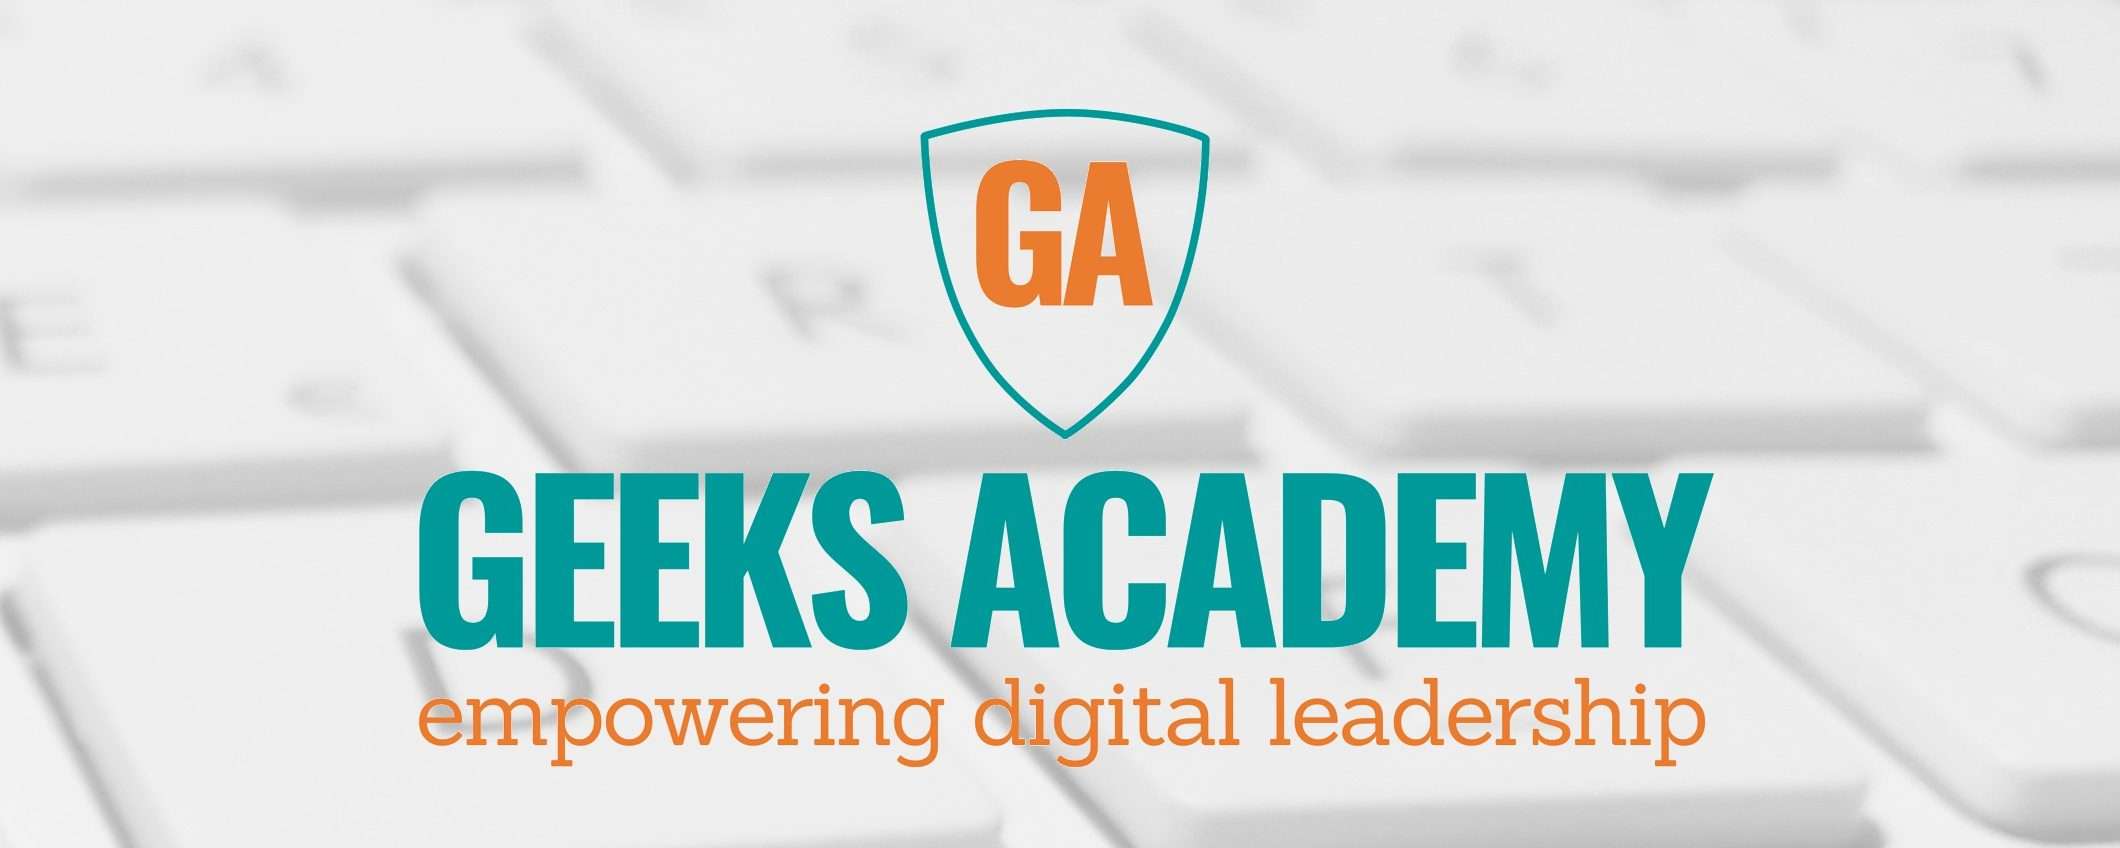 Geeks Academy: così il mondo ICT può trovare nuovi talenti